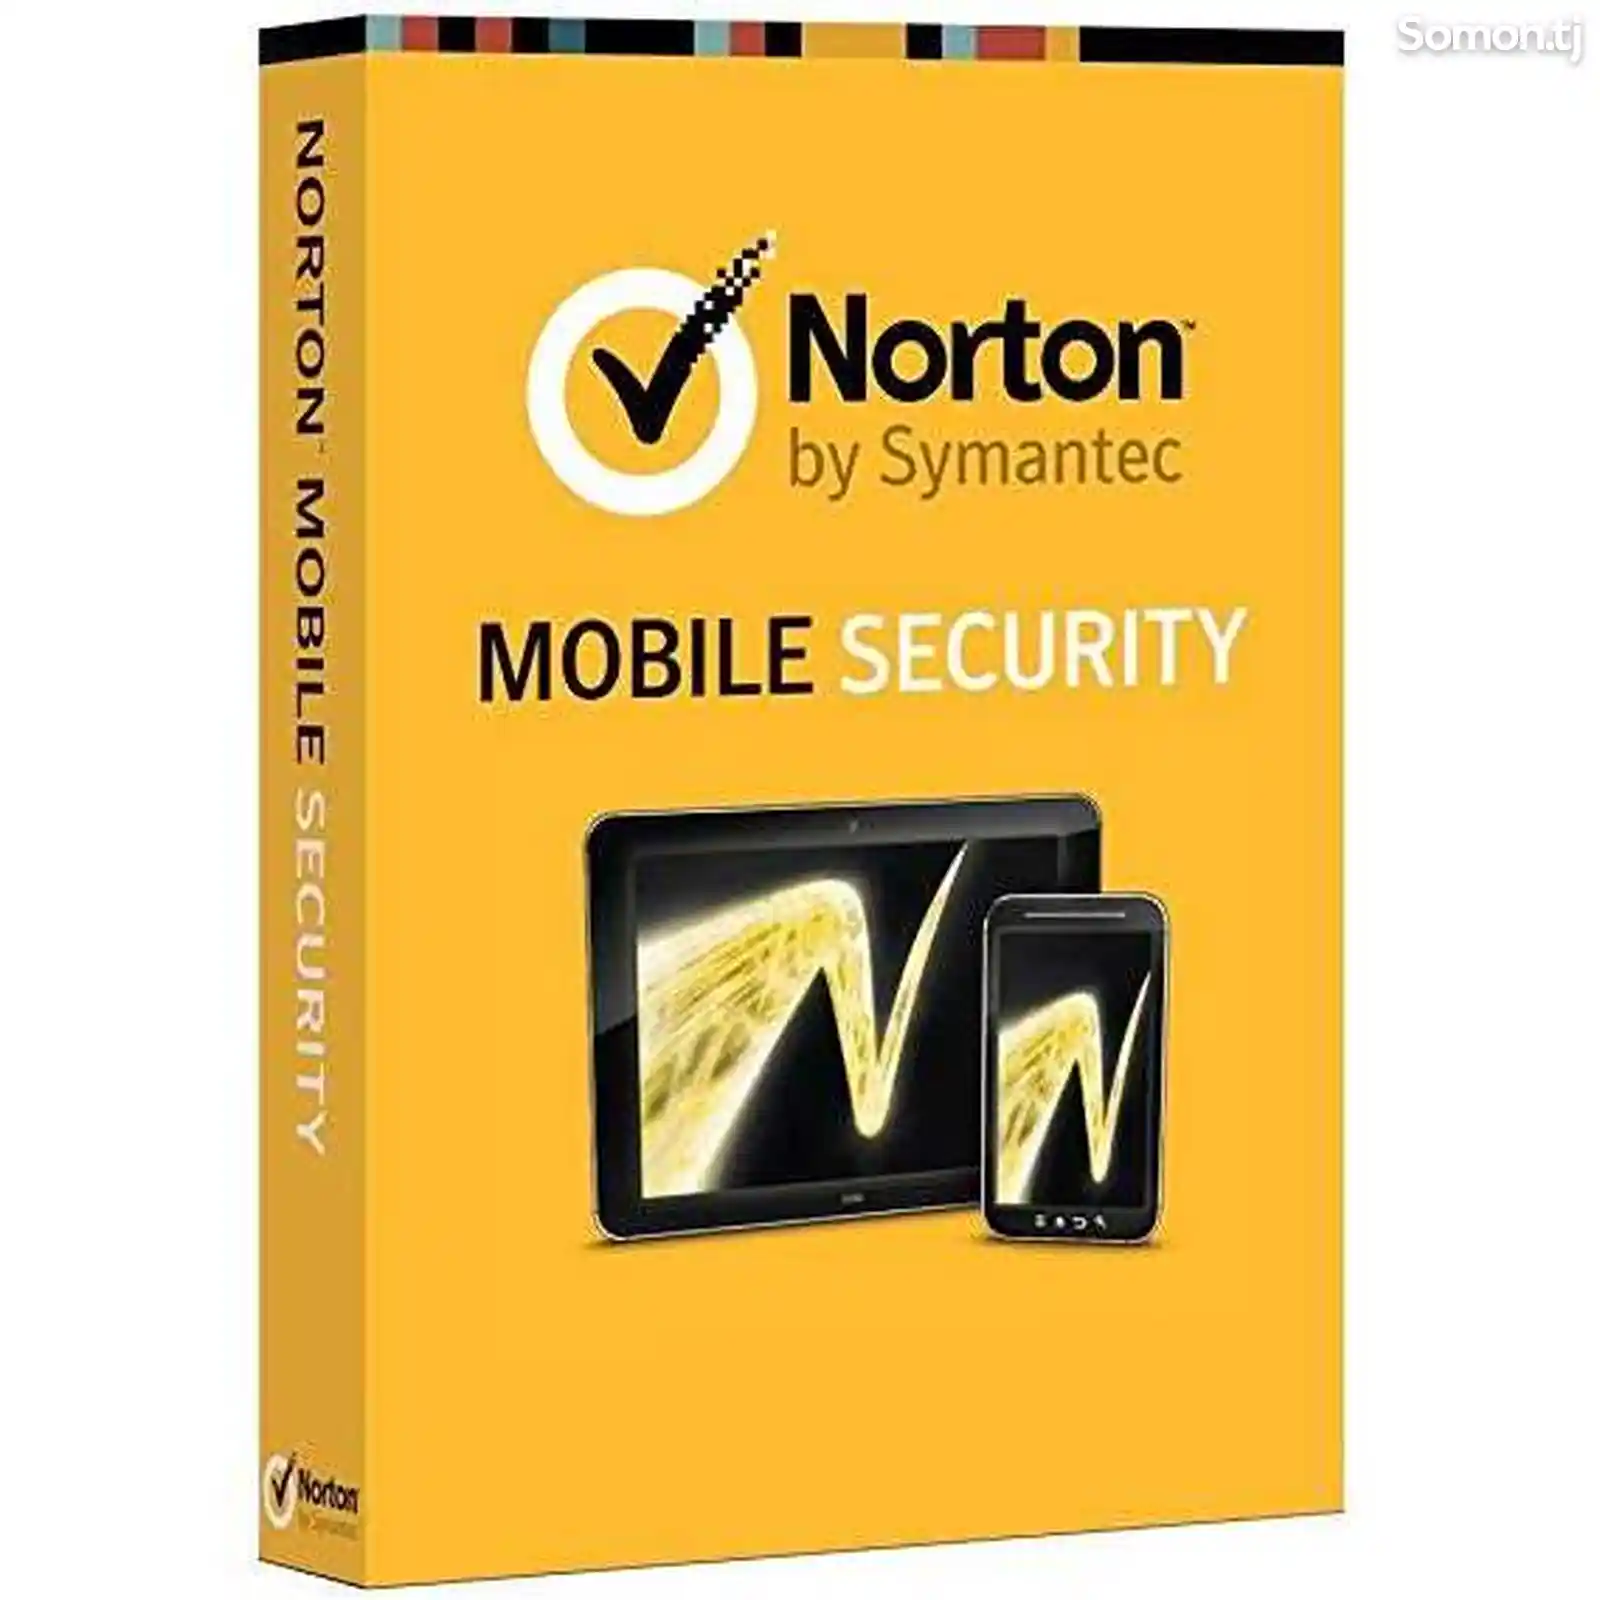 Norton Mobile Security 3.0 - иҷозатнома барои 1 дона, 1 сол